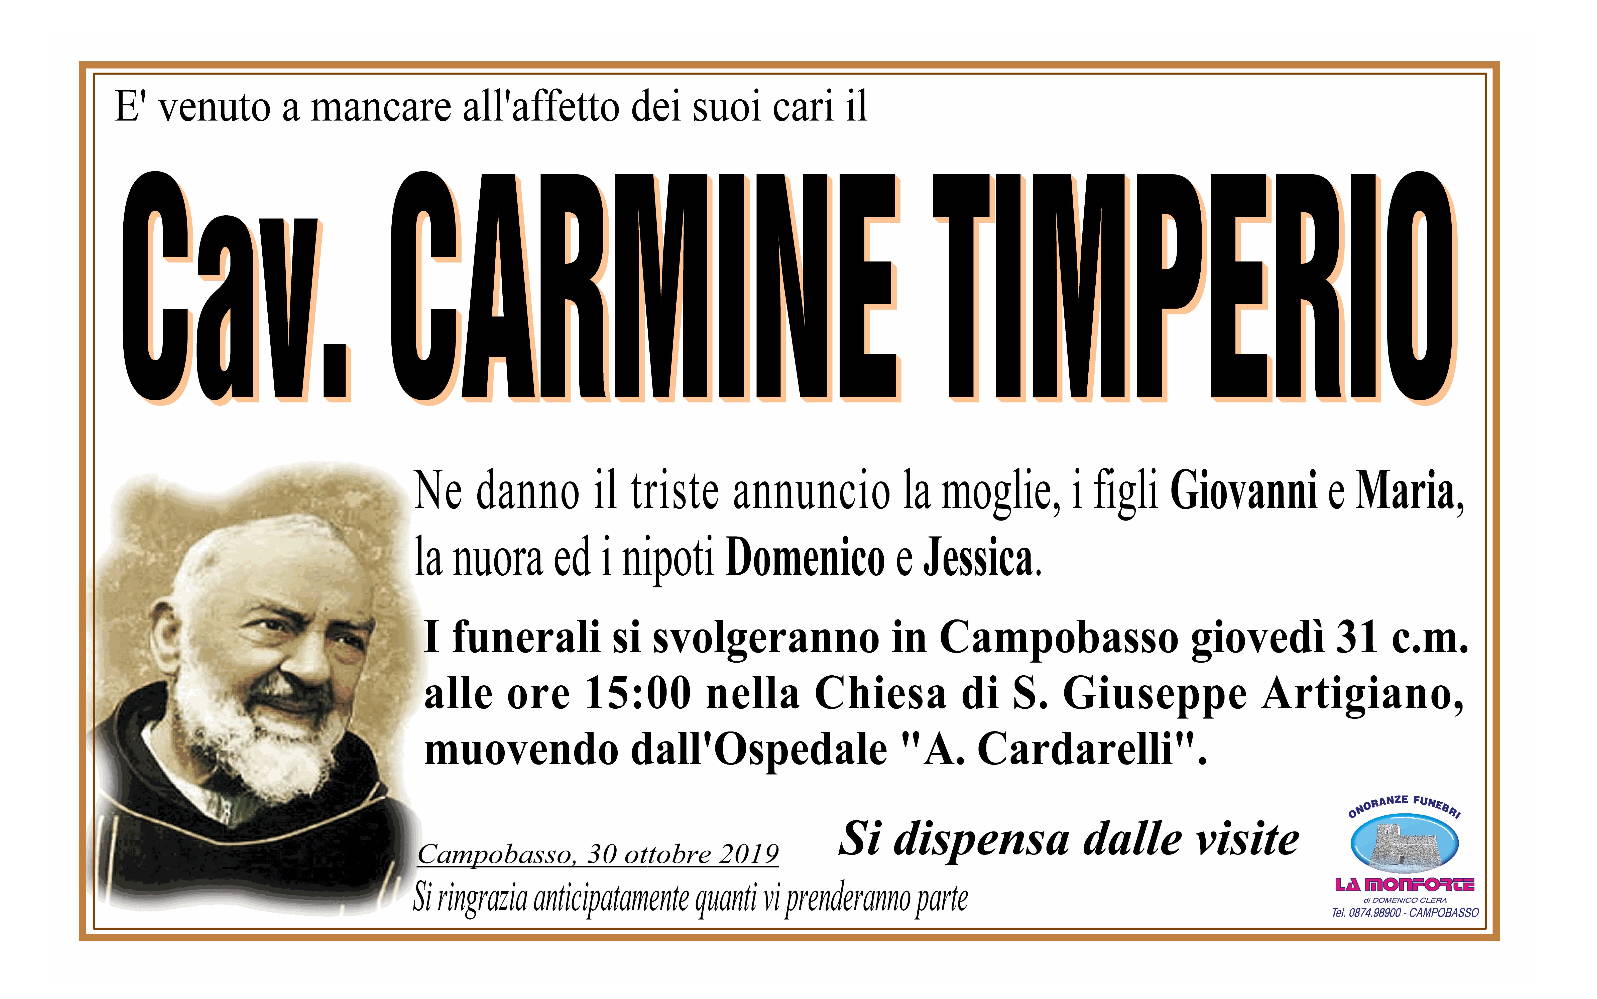 Carmine Timperio